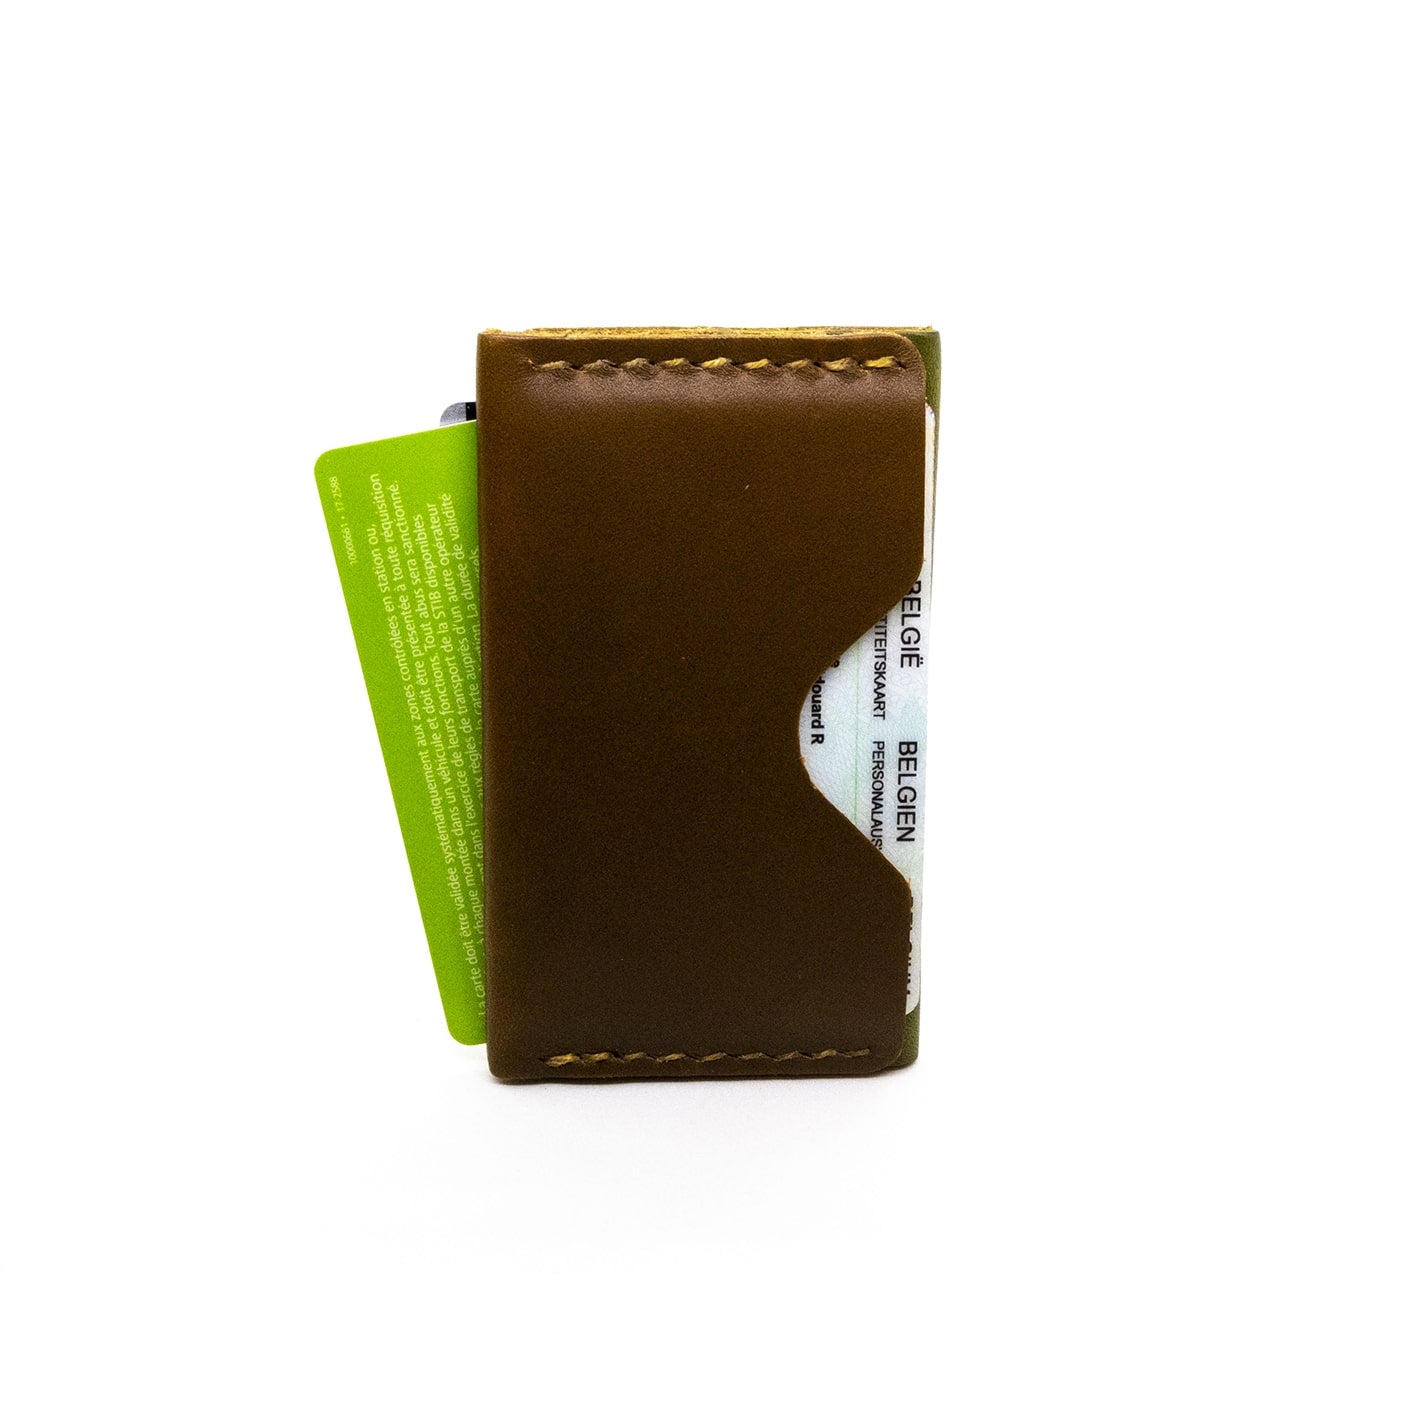 Porte-cartes en cuir recyclé WOODSTAG 